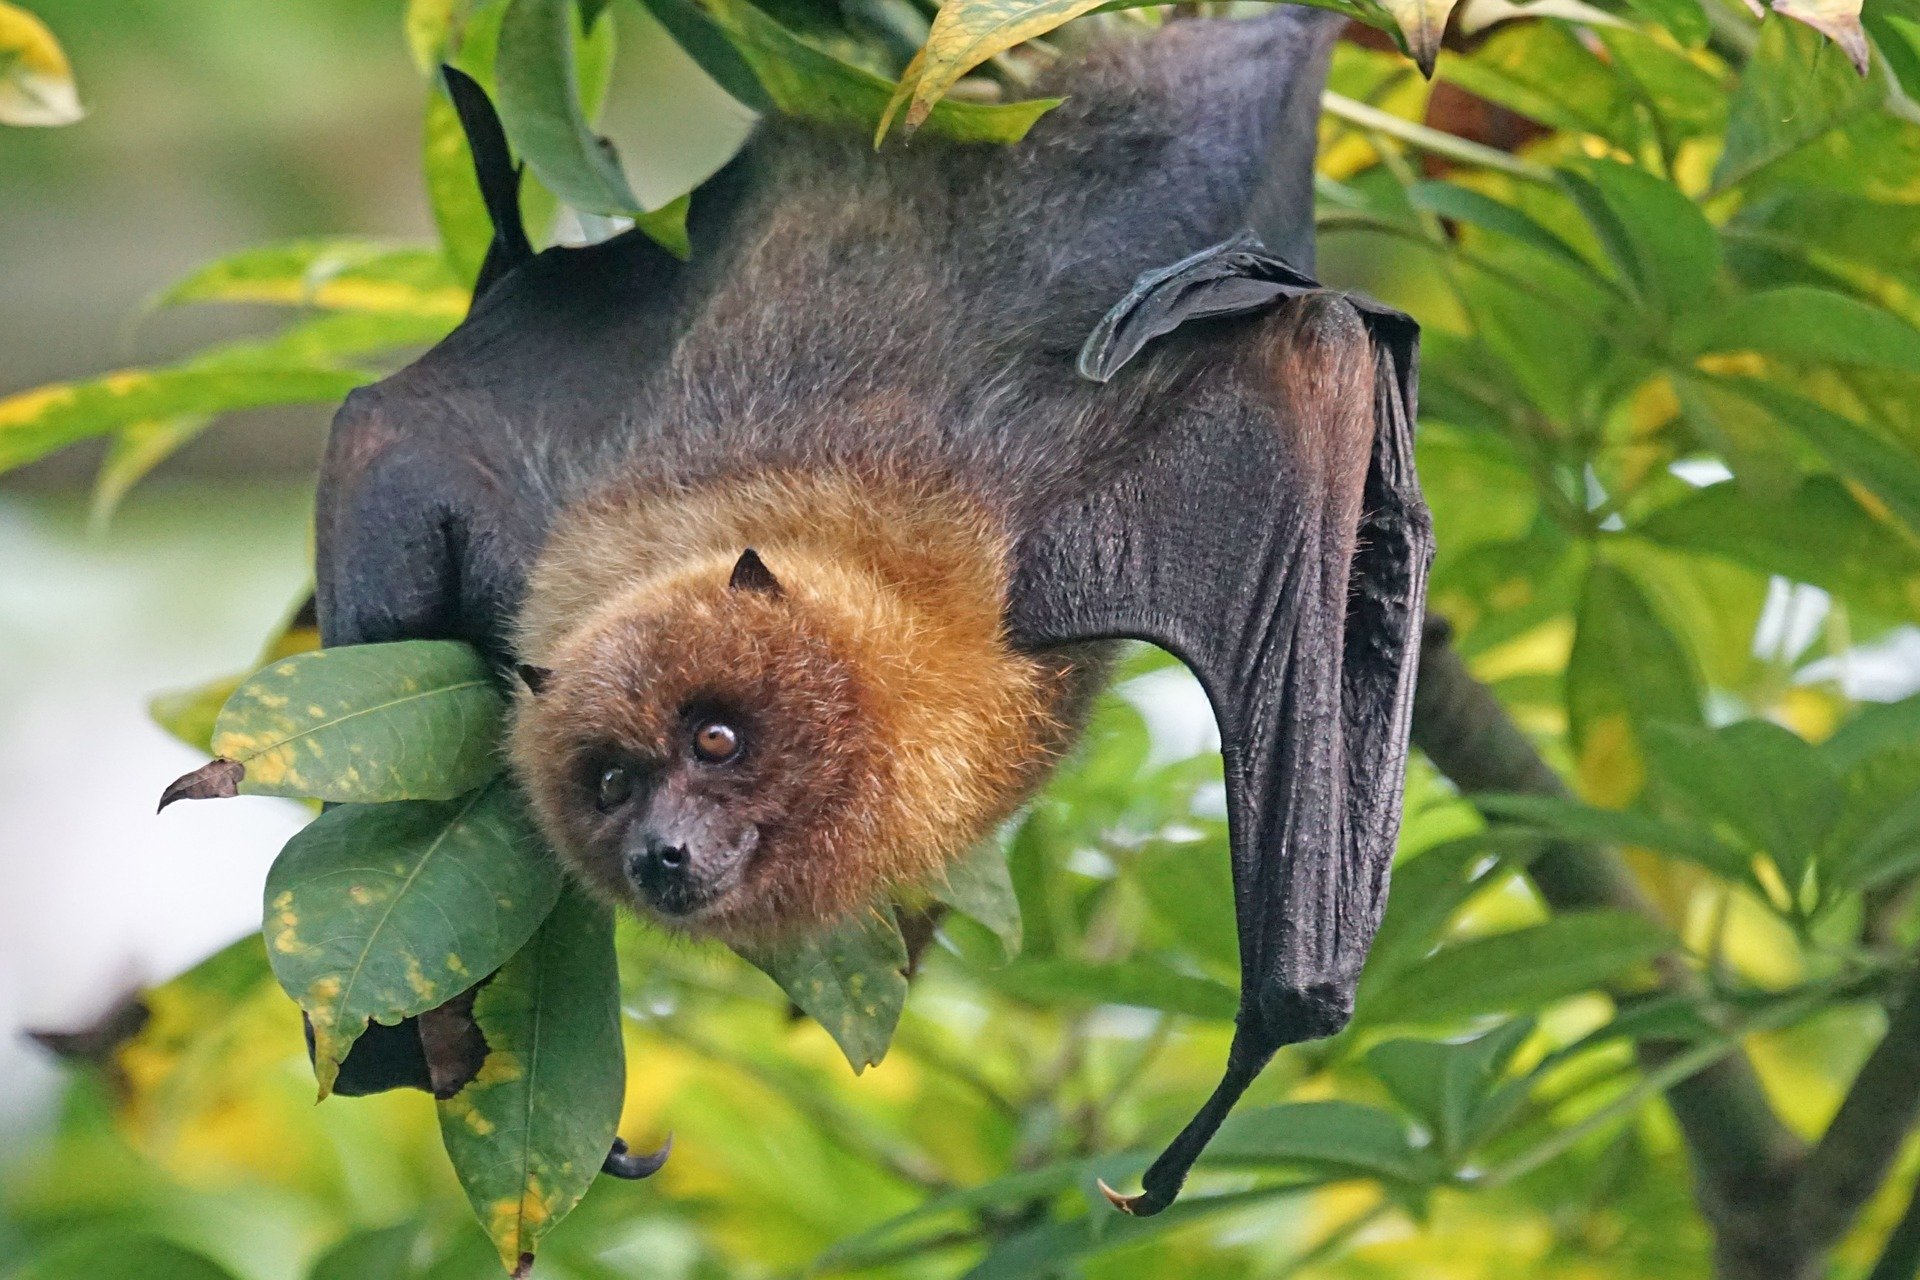 Flughund (flying fox/fruit bats)